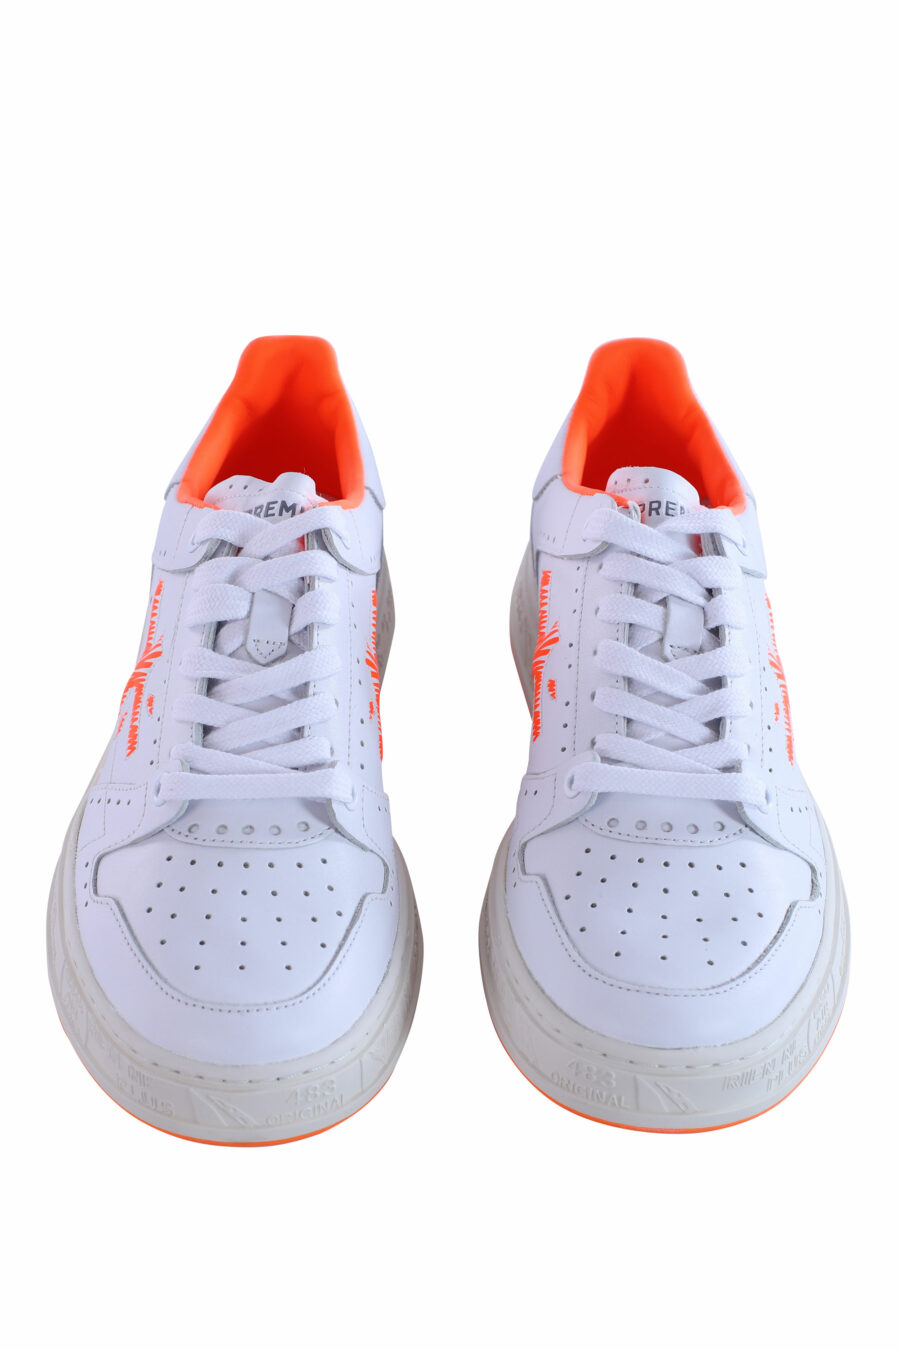 Zapatillas blancas con naranja "quinn 6302" - IMG 2998